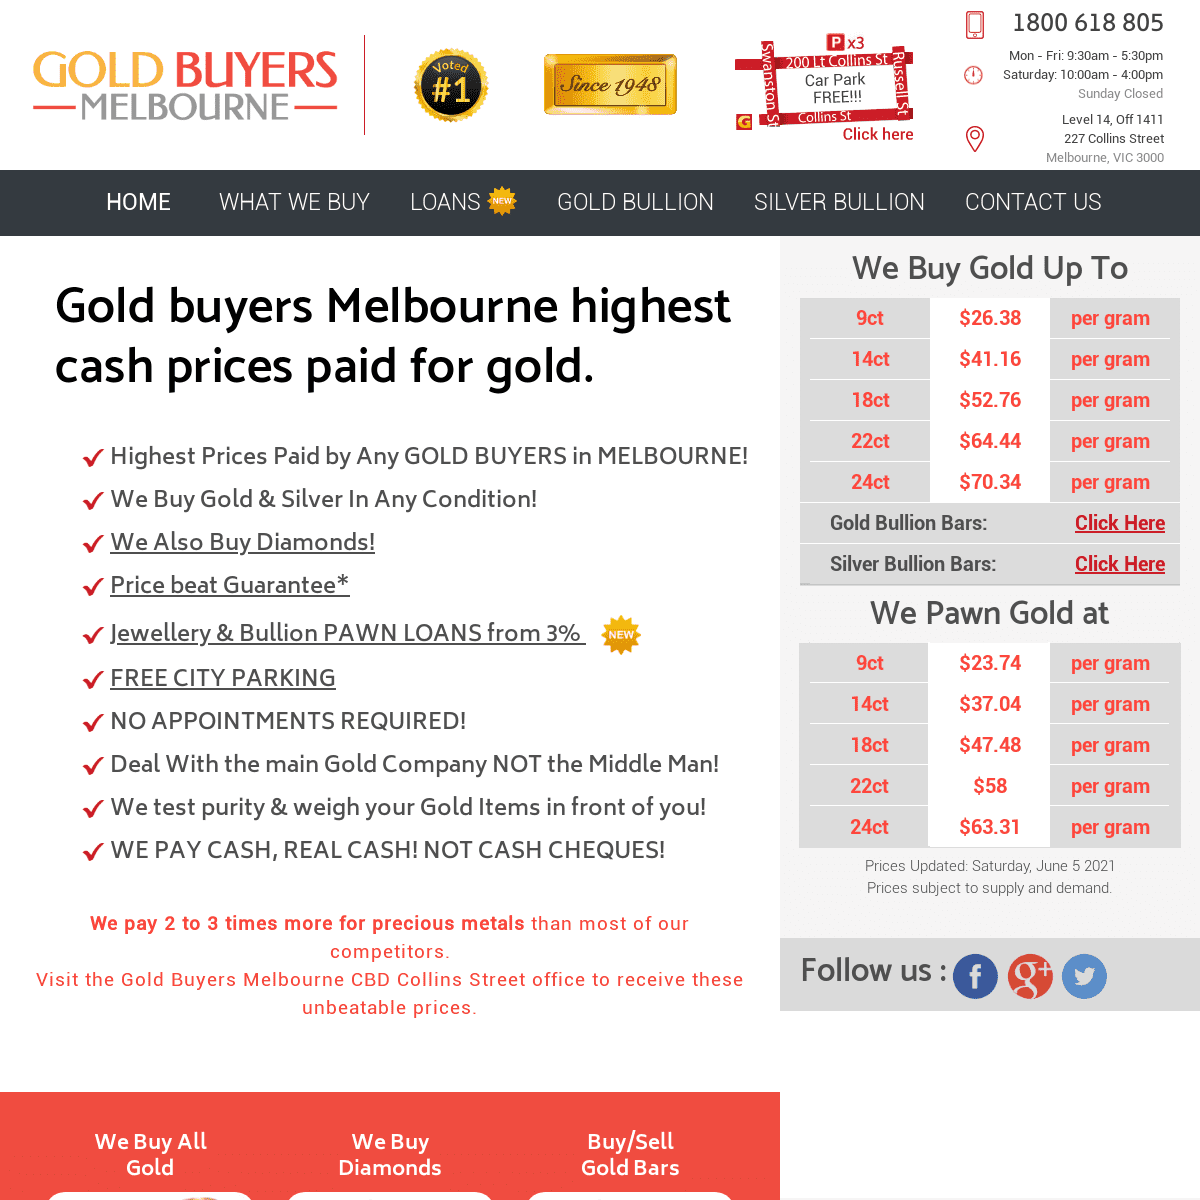 A complete backup of https://goldbuyersmelbourne.com.au